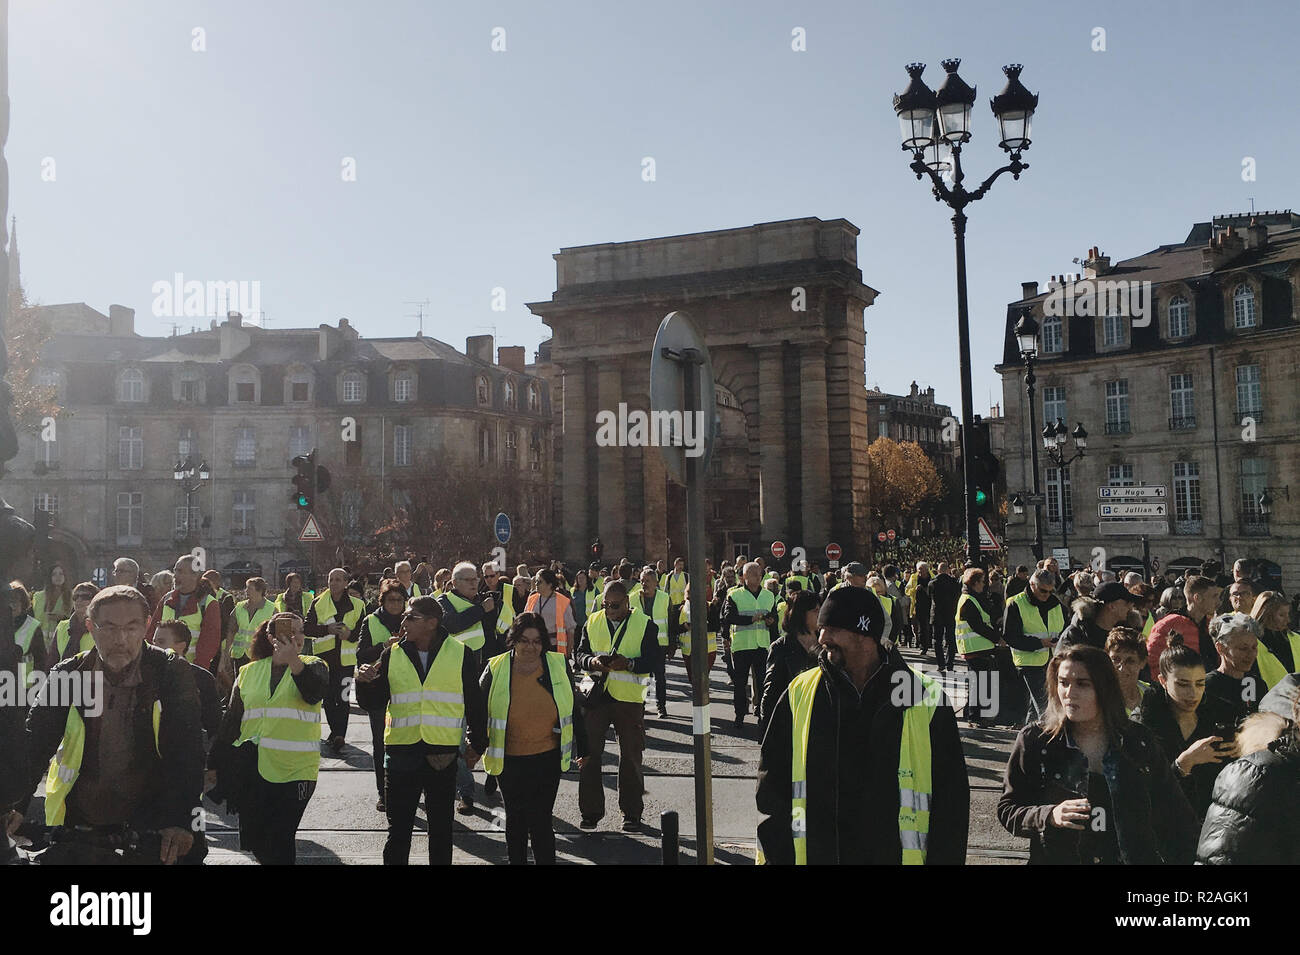 Burdeos, Francia - 17 de noviembre de 2018: manifestación chalecos amarillos en contra de aumentar los impuestos sobre la gasolina y el diesel presentó el Gobierno de Francia: Crédito sportpoint/Alamy Live News Foto de stock